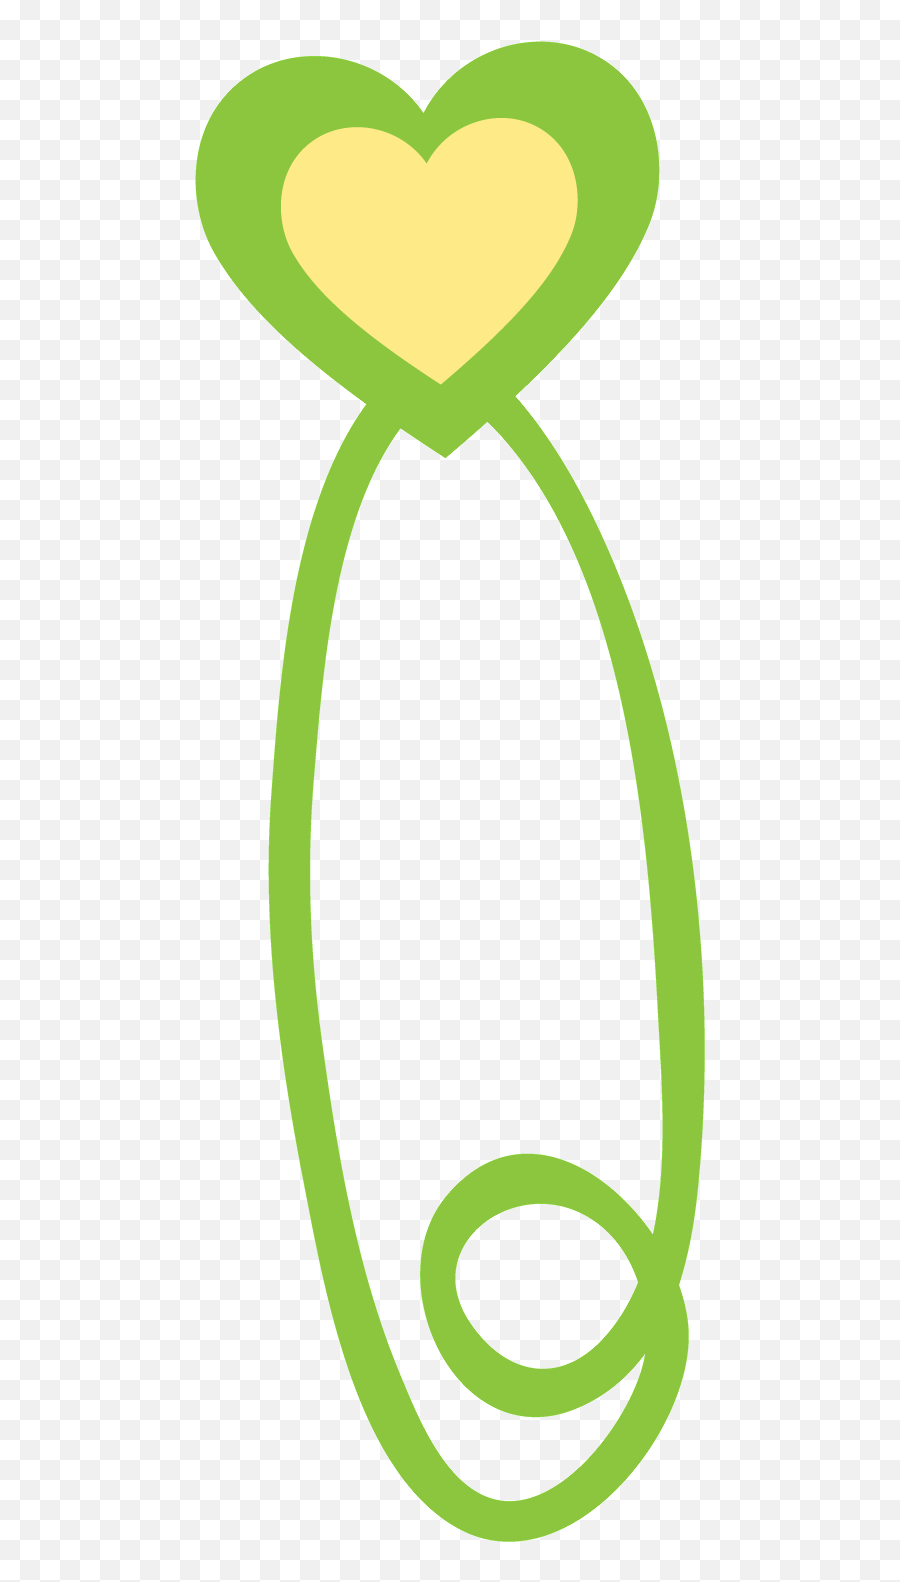 Cricut Clipart - Full Size Clipart 2028775 Pinclipart Emoji,Free Emoji Template For Cricut